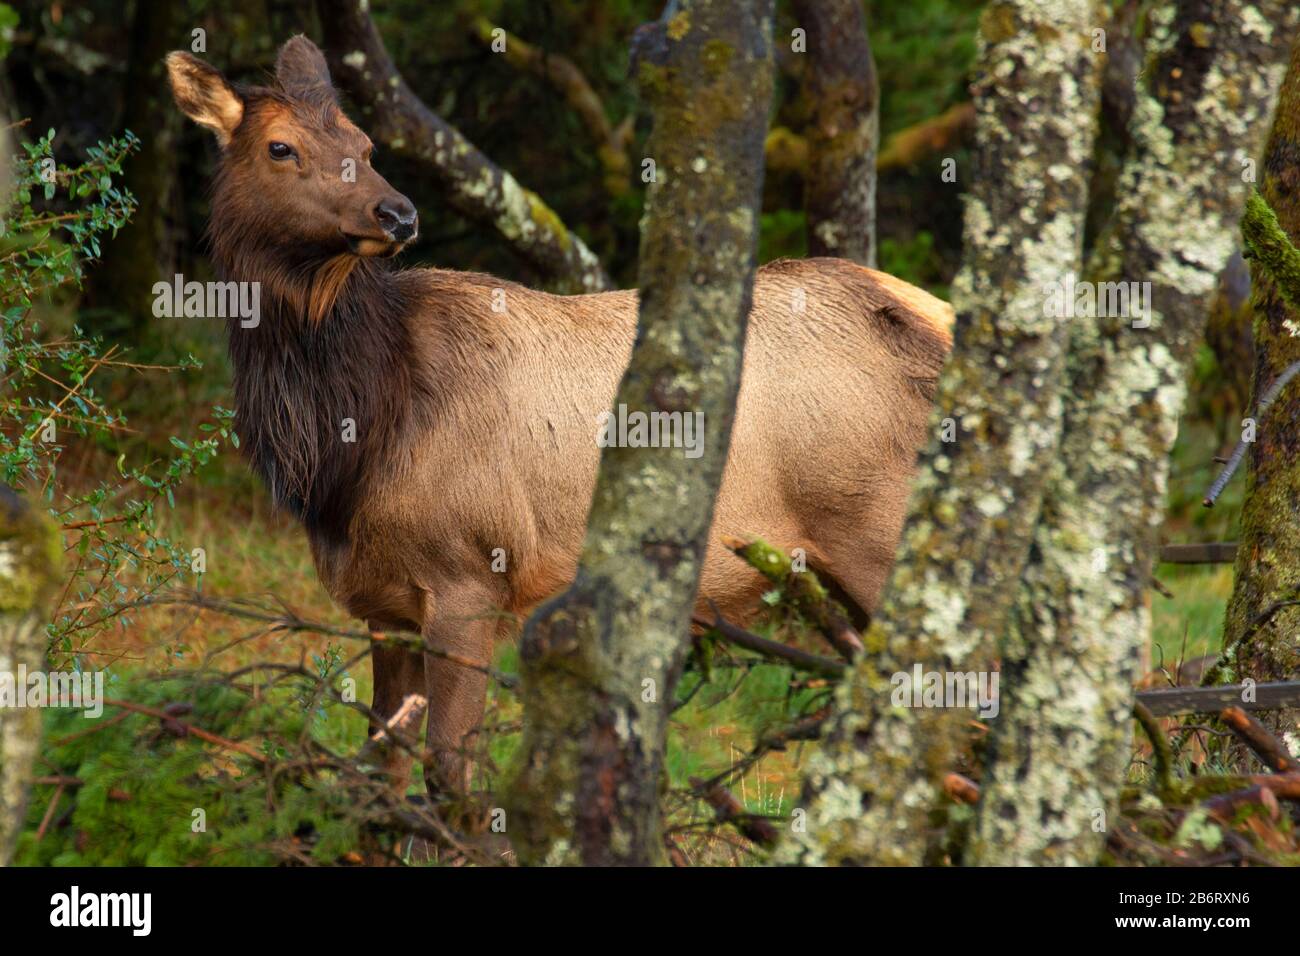 Roosevelt elk, Nehalem Bay State Park, Oregon Stock Photo